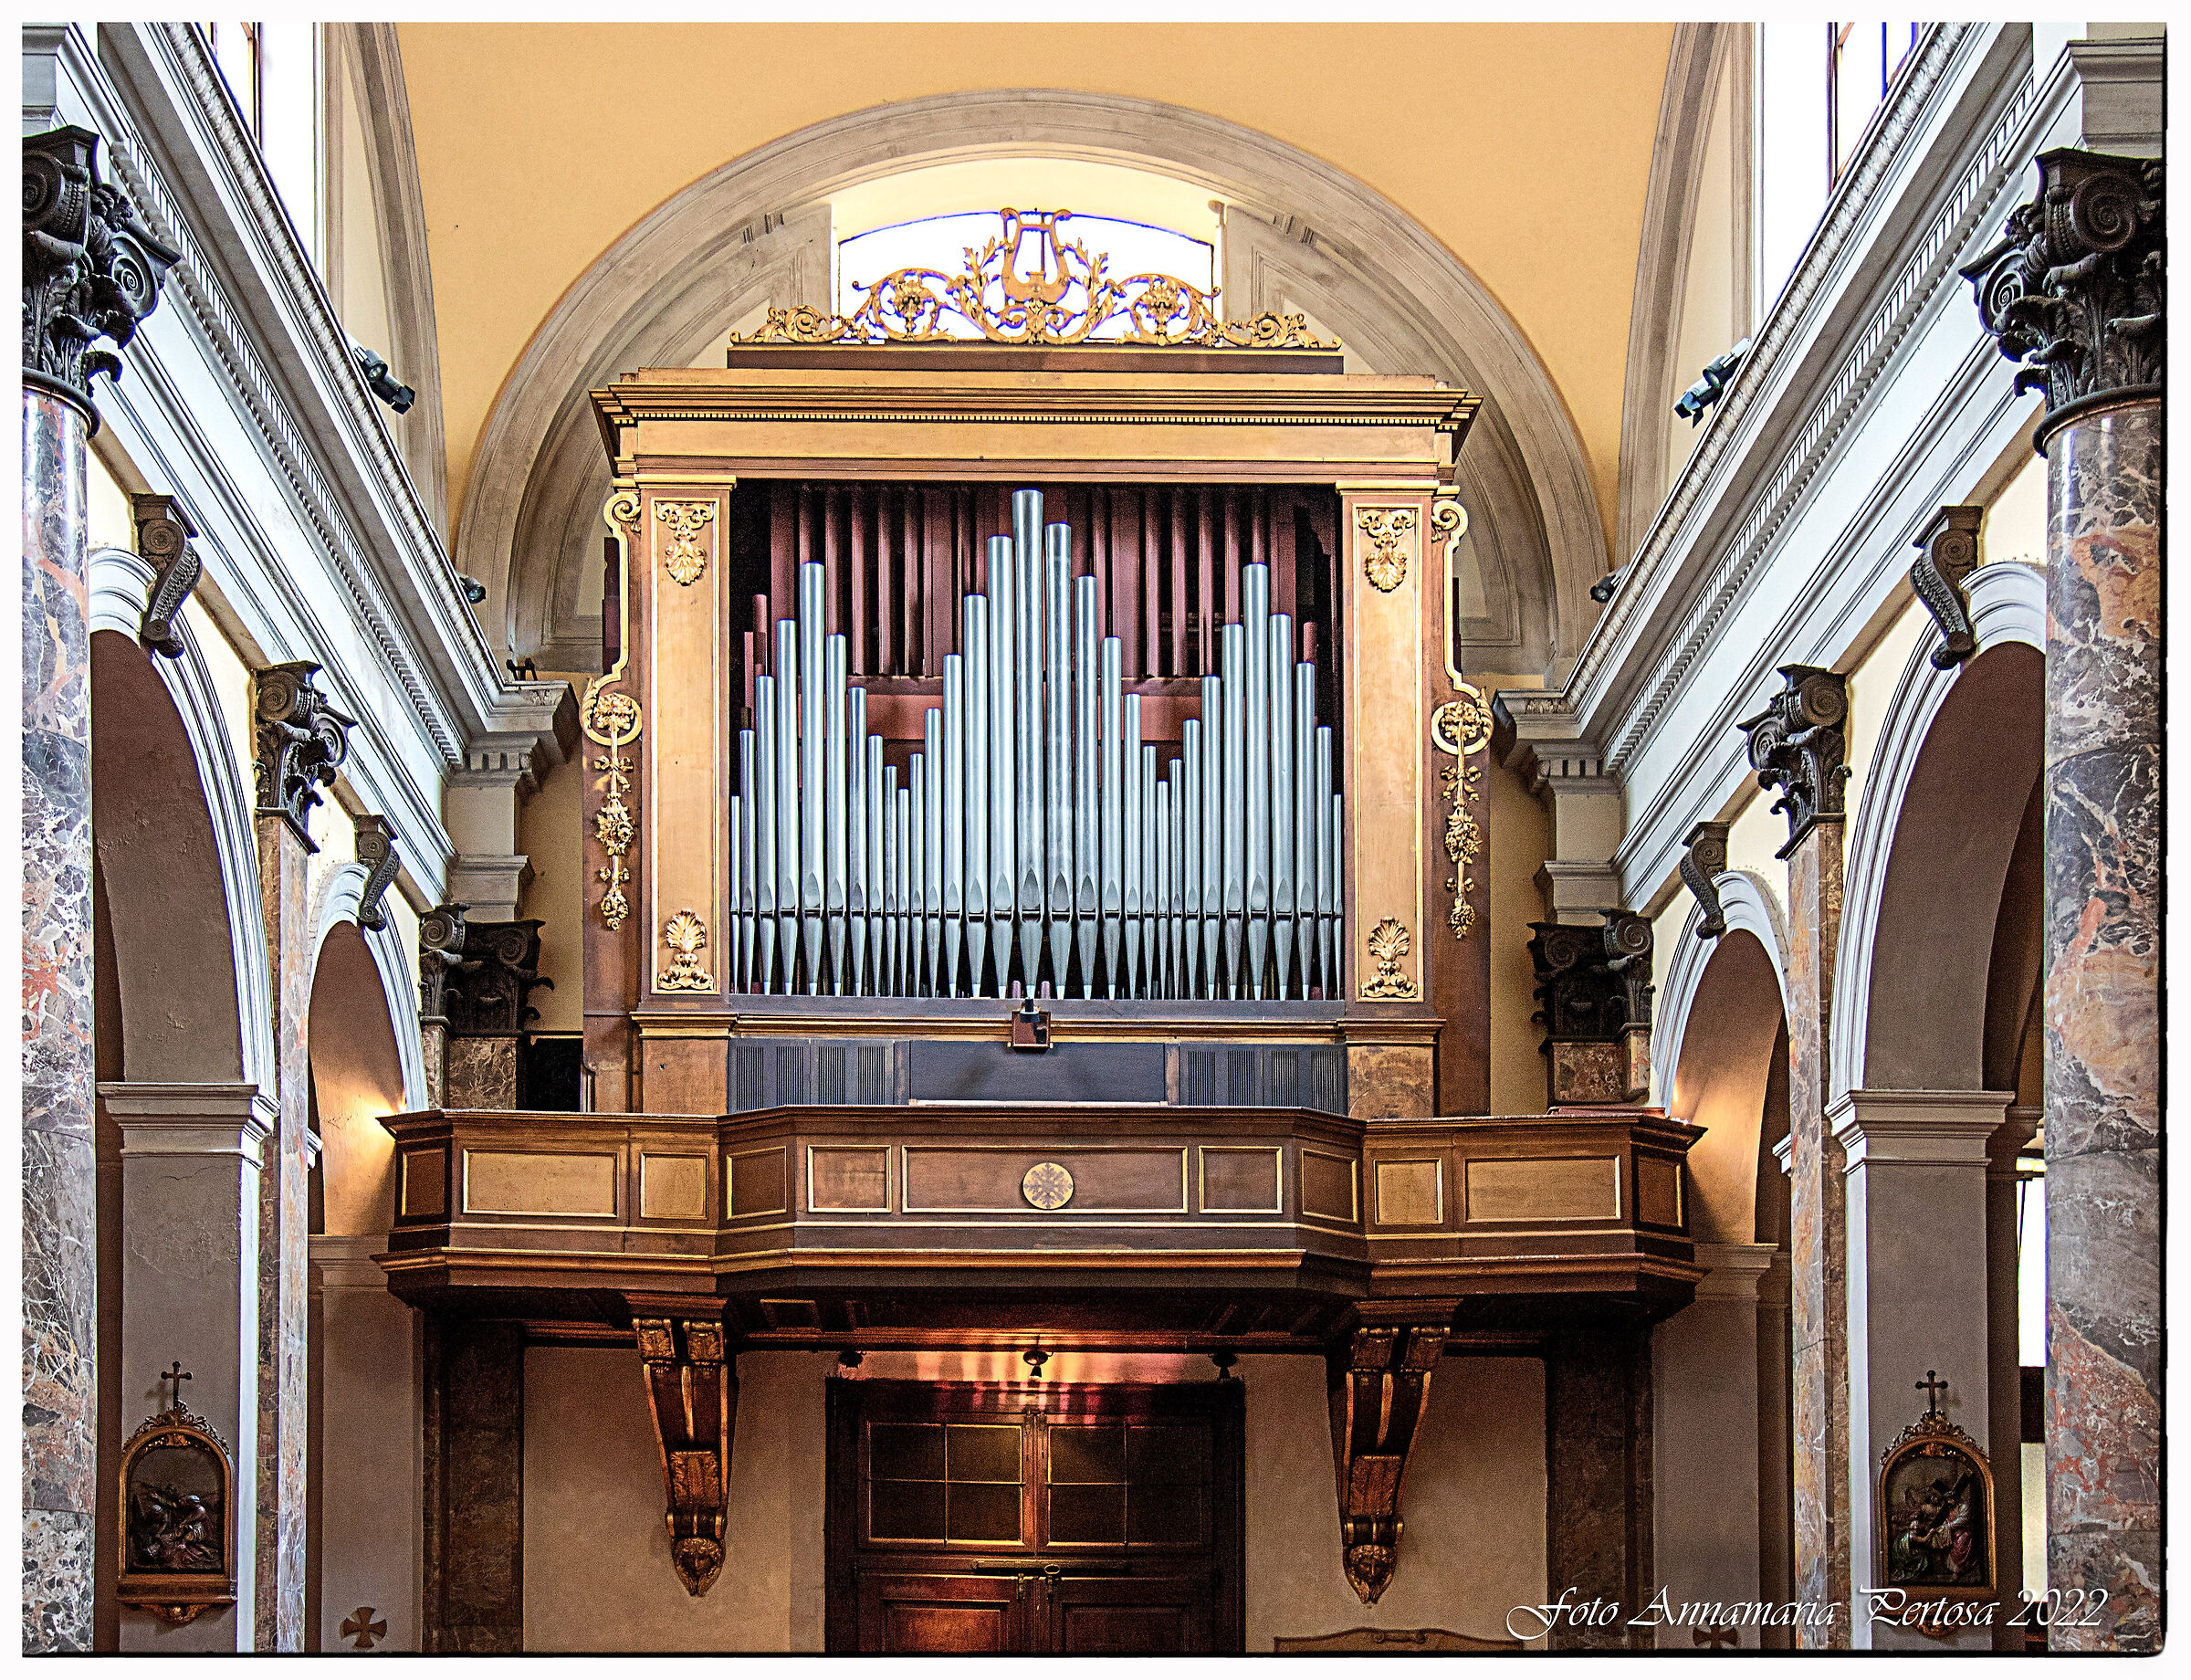 L'organo di San Giorgio al Palazzo Milano...